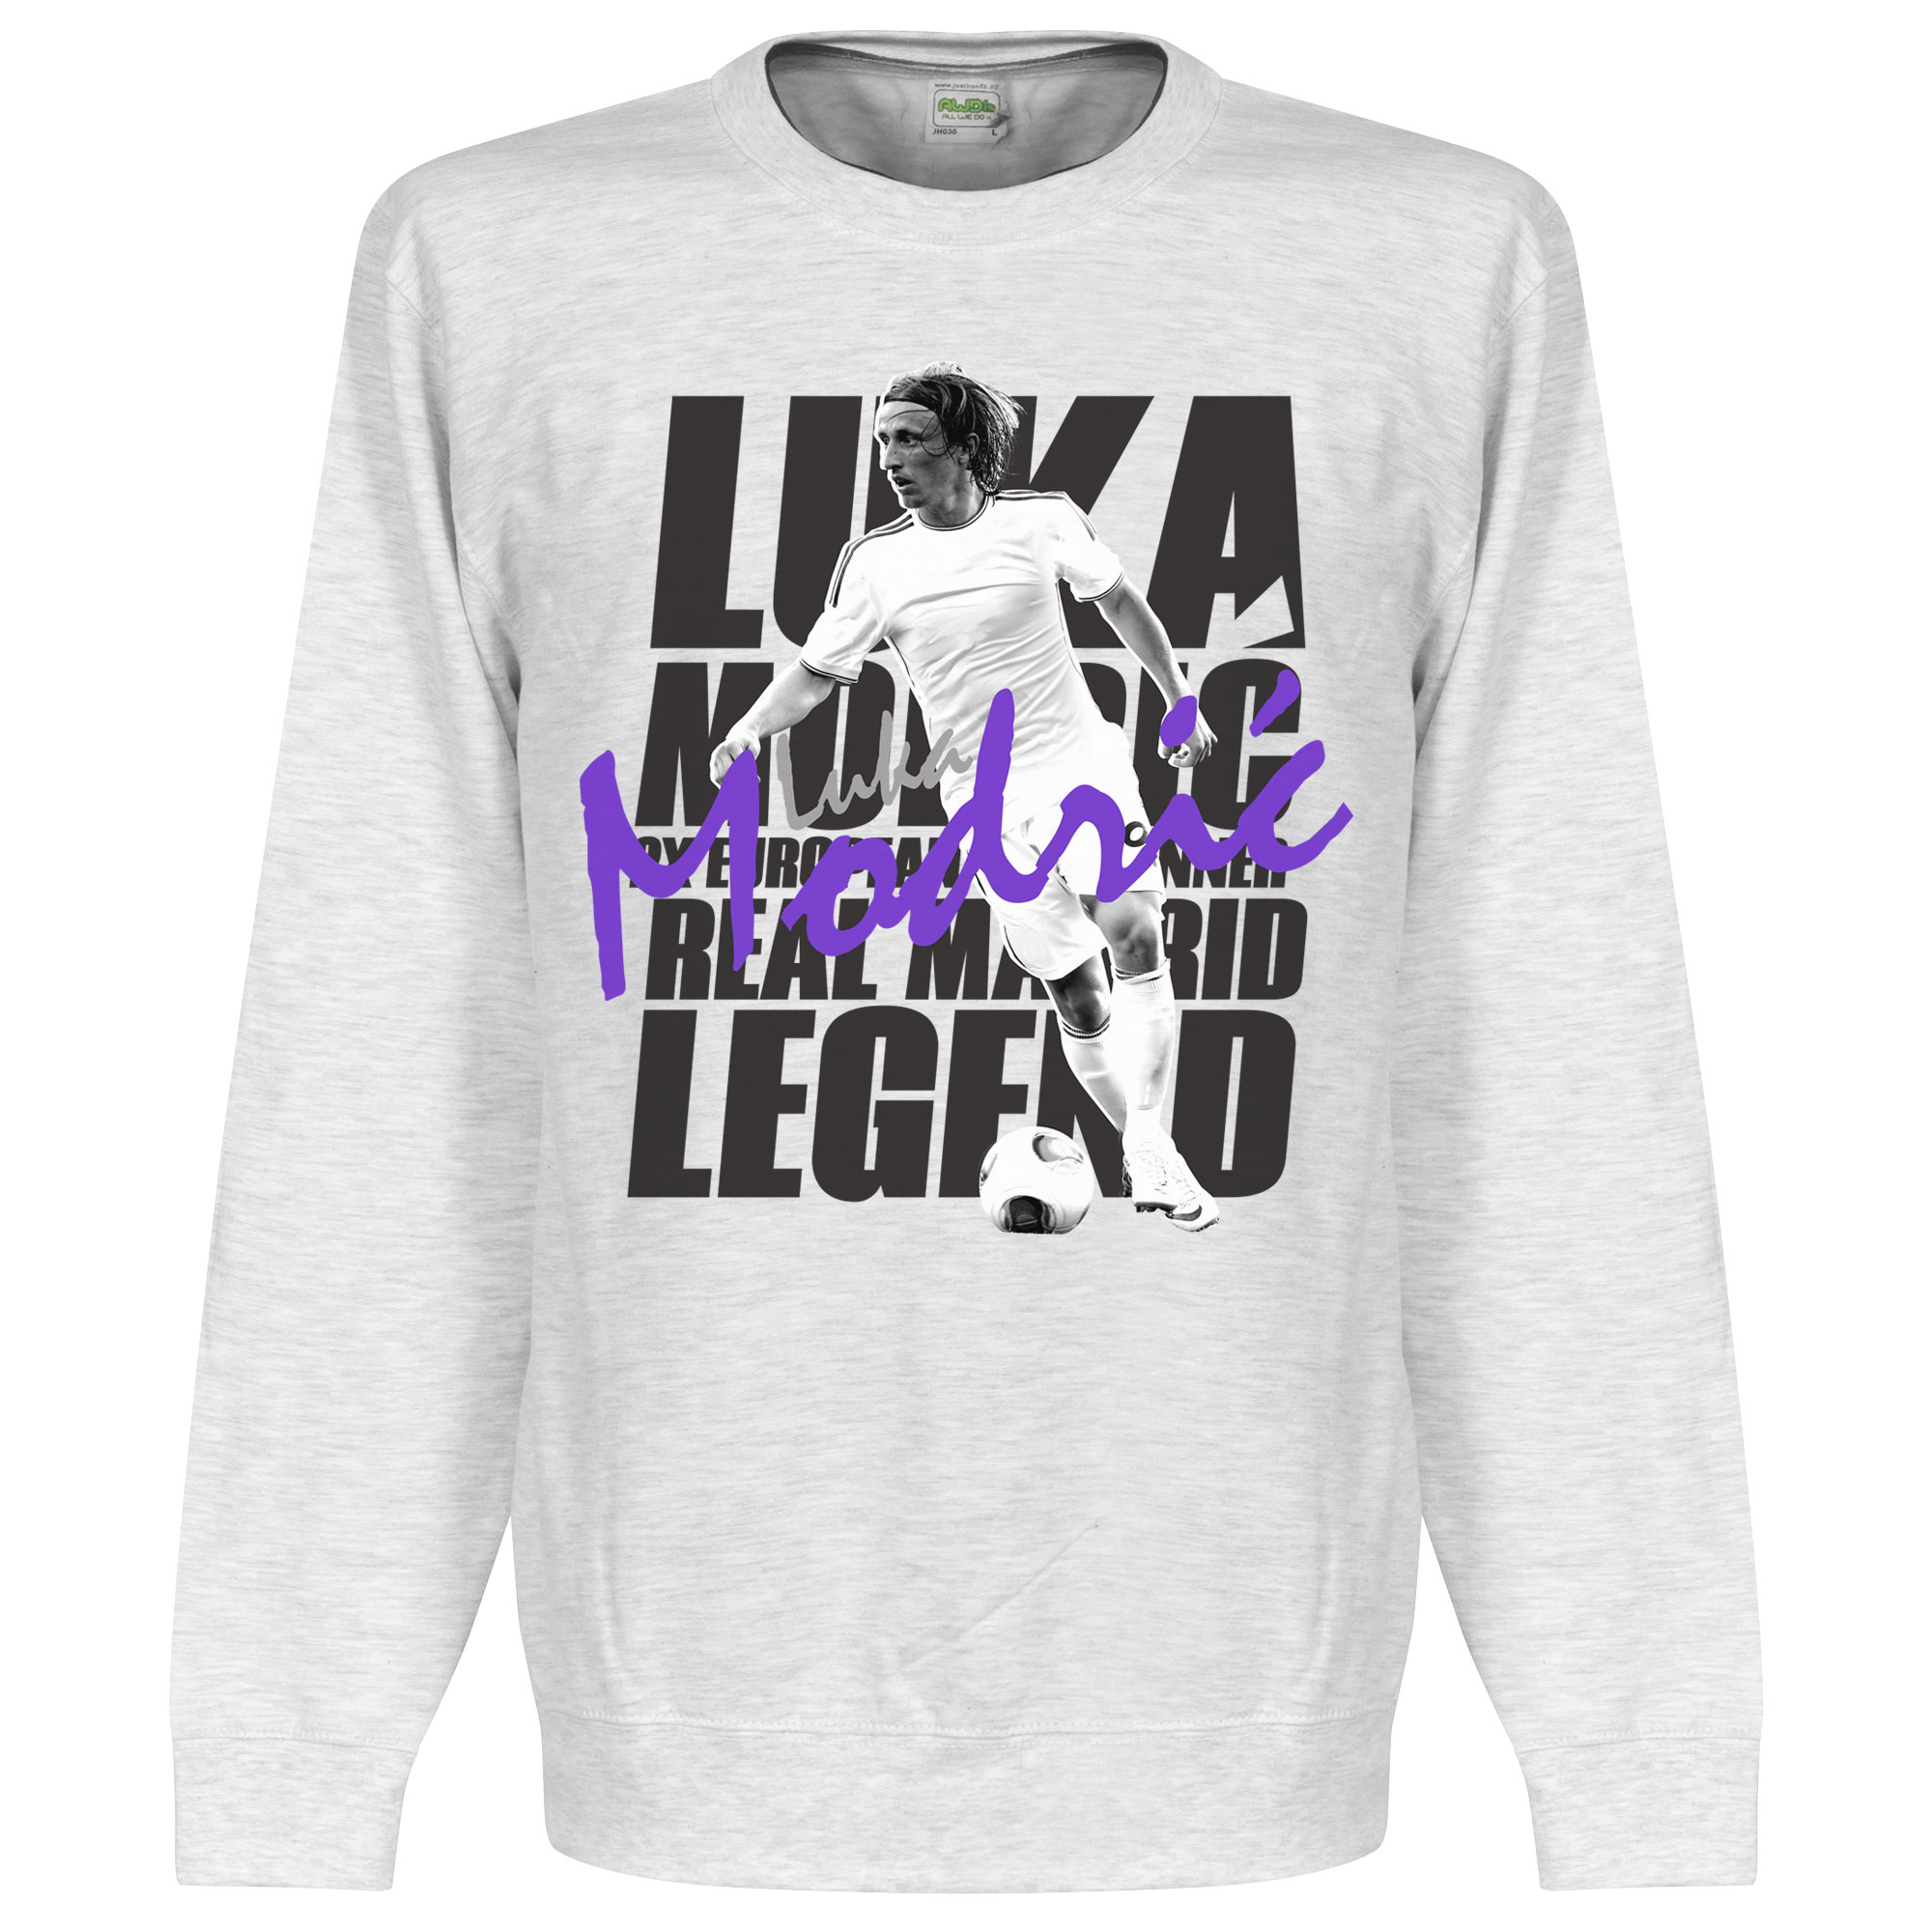 Modric Legend Sweater L